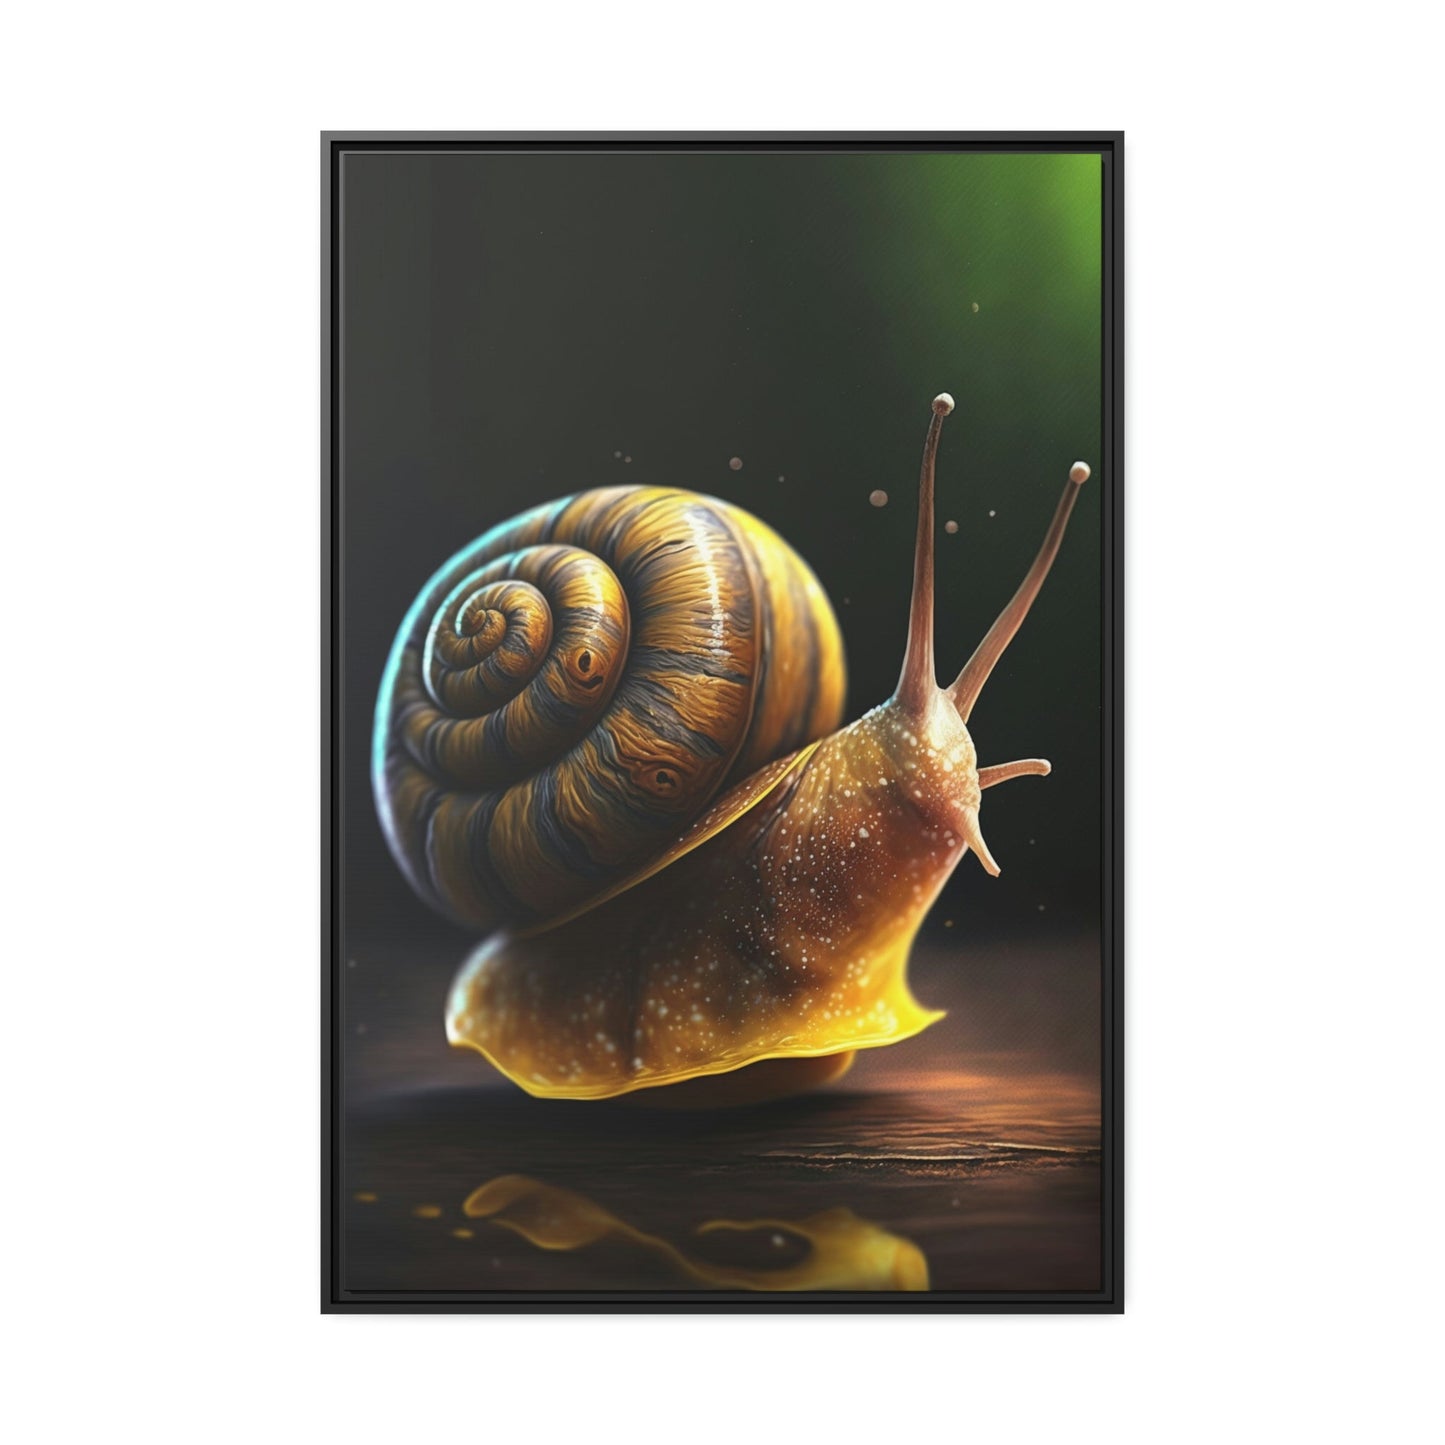 Nature's Miniature: Snails Up Close